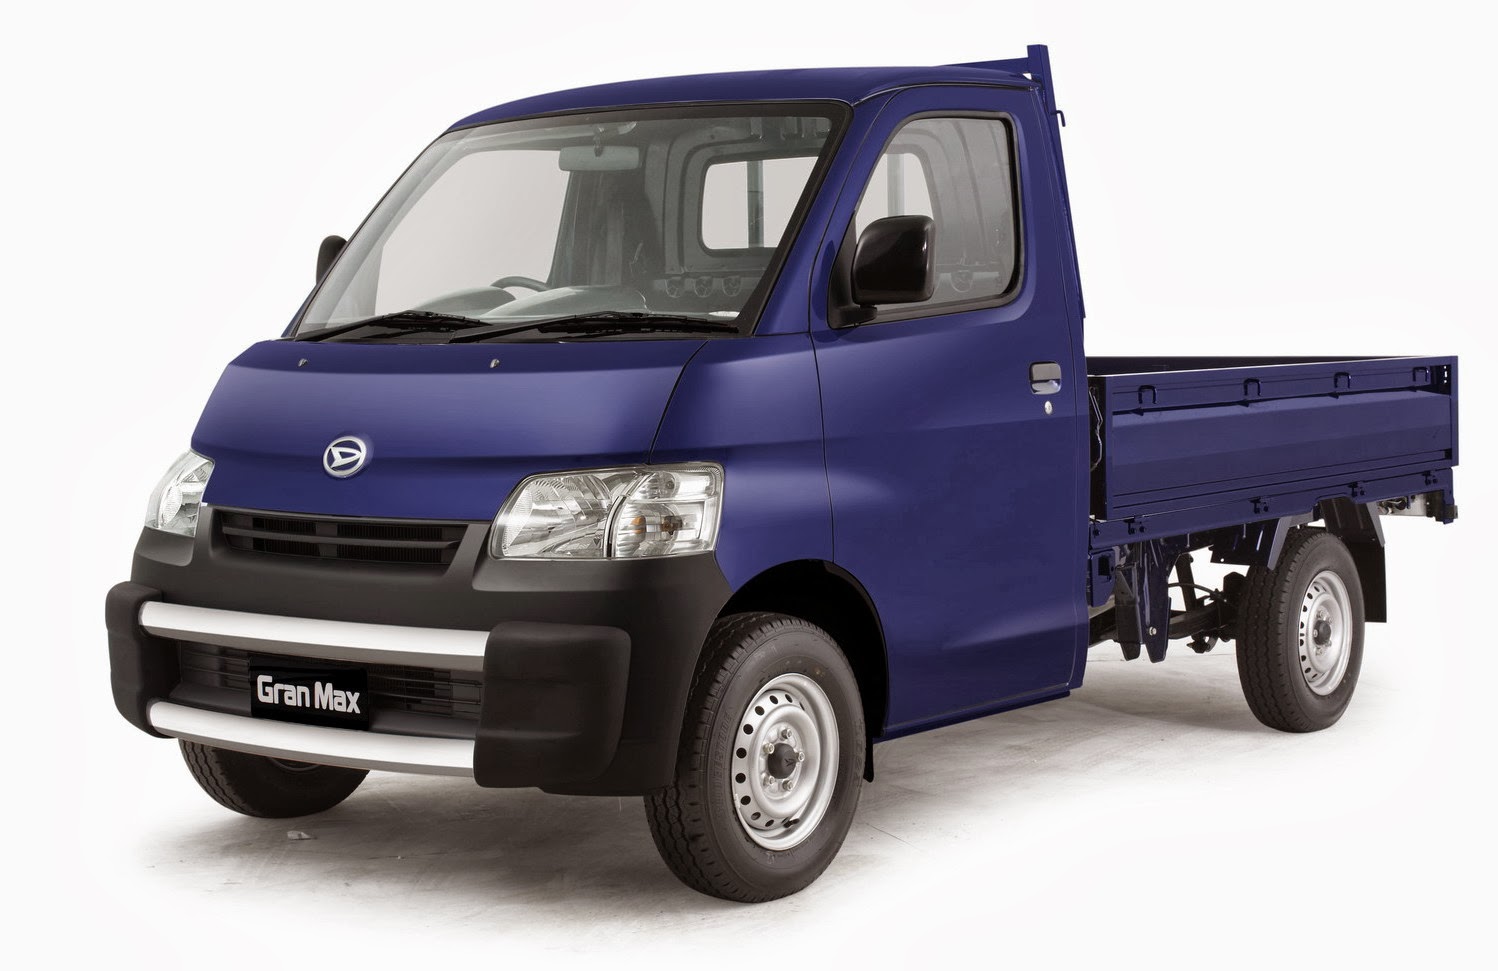 Info Lengkap Spesifikasi Dan Jenis Daihatsu Mobil Grand Max Otosiako